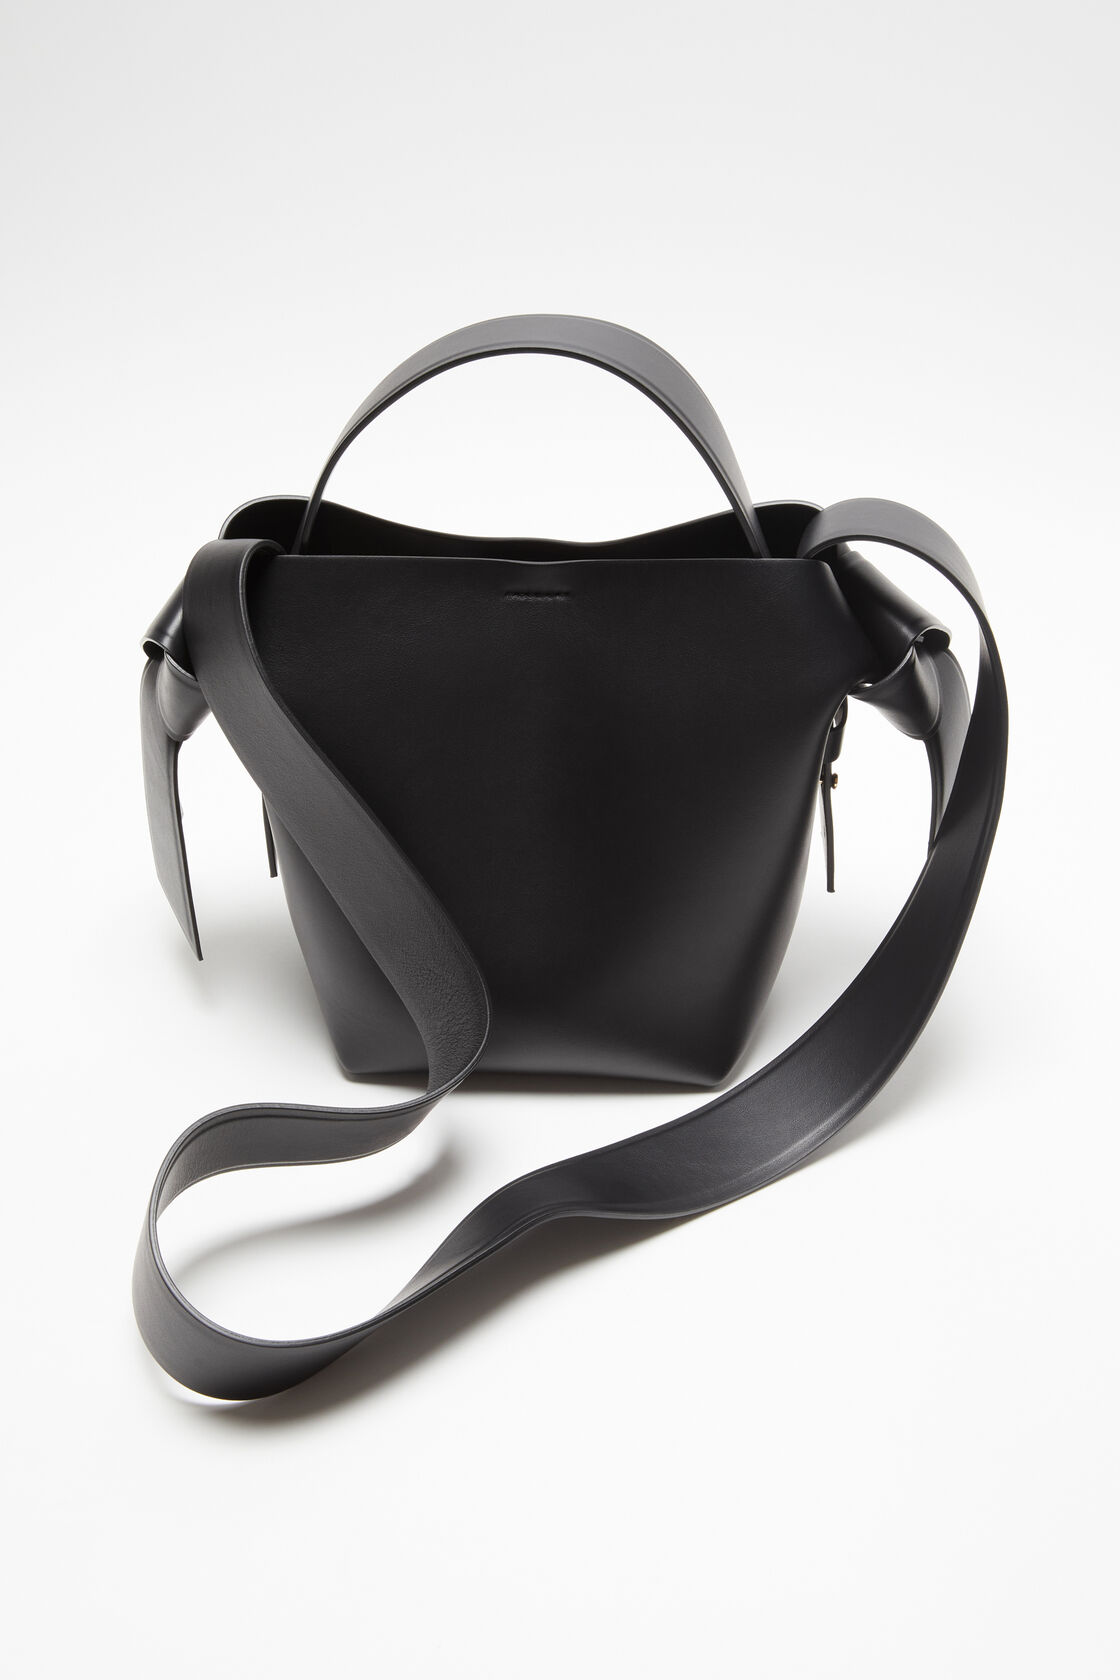 ACNE STUDIOS Musubi Mini Shoulder Bag in Black